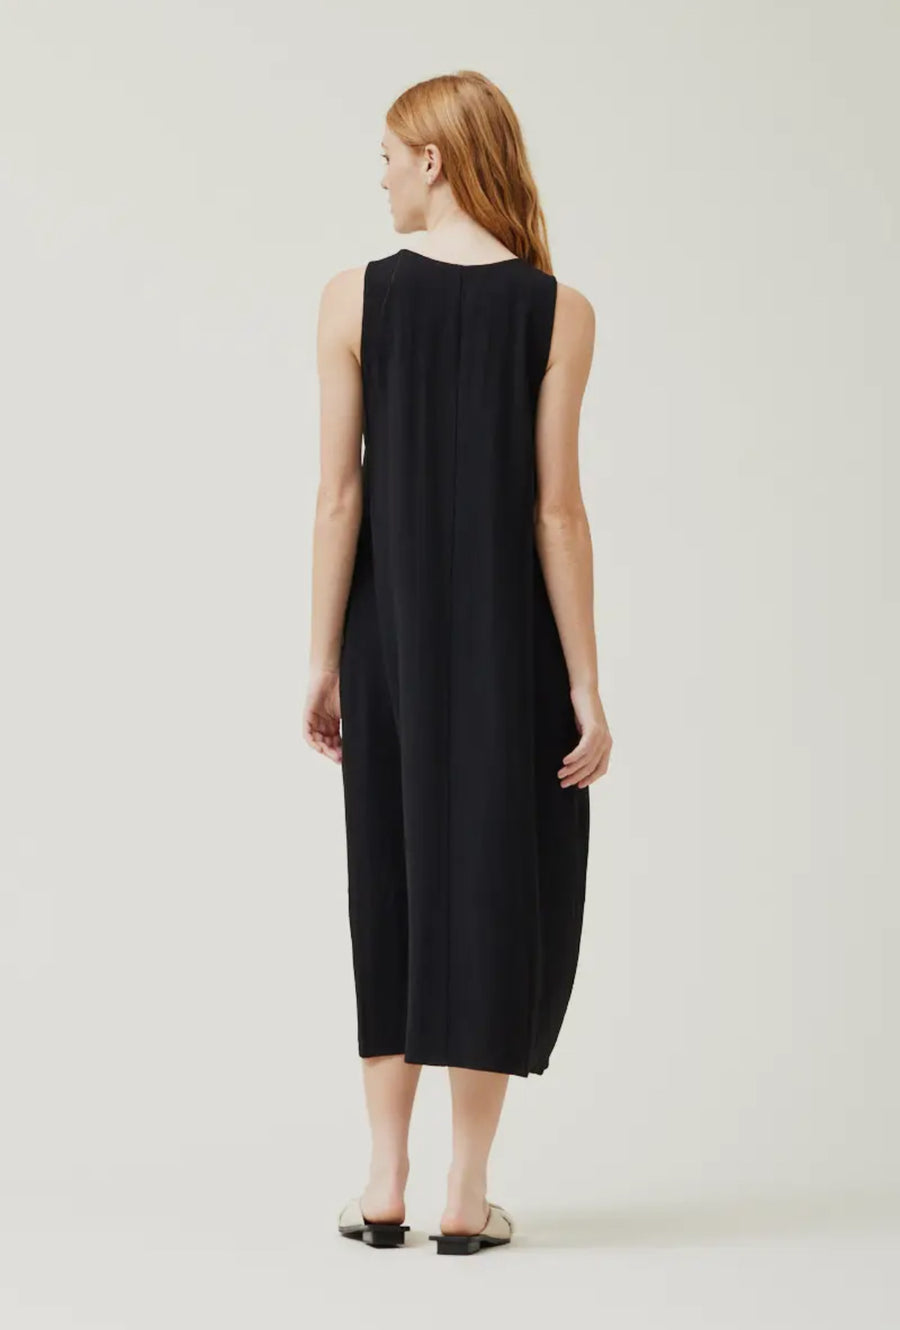 Linen Blend Dress- Black